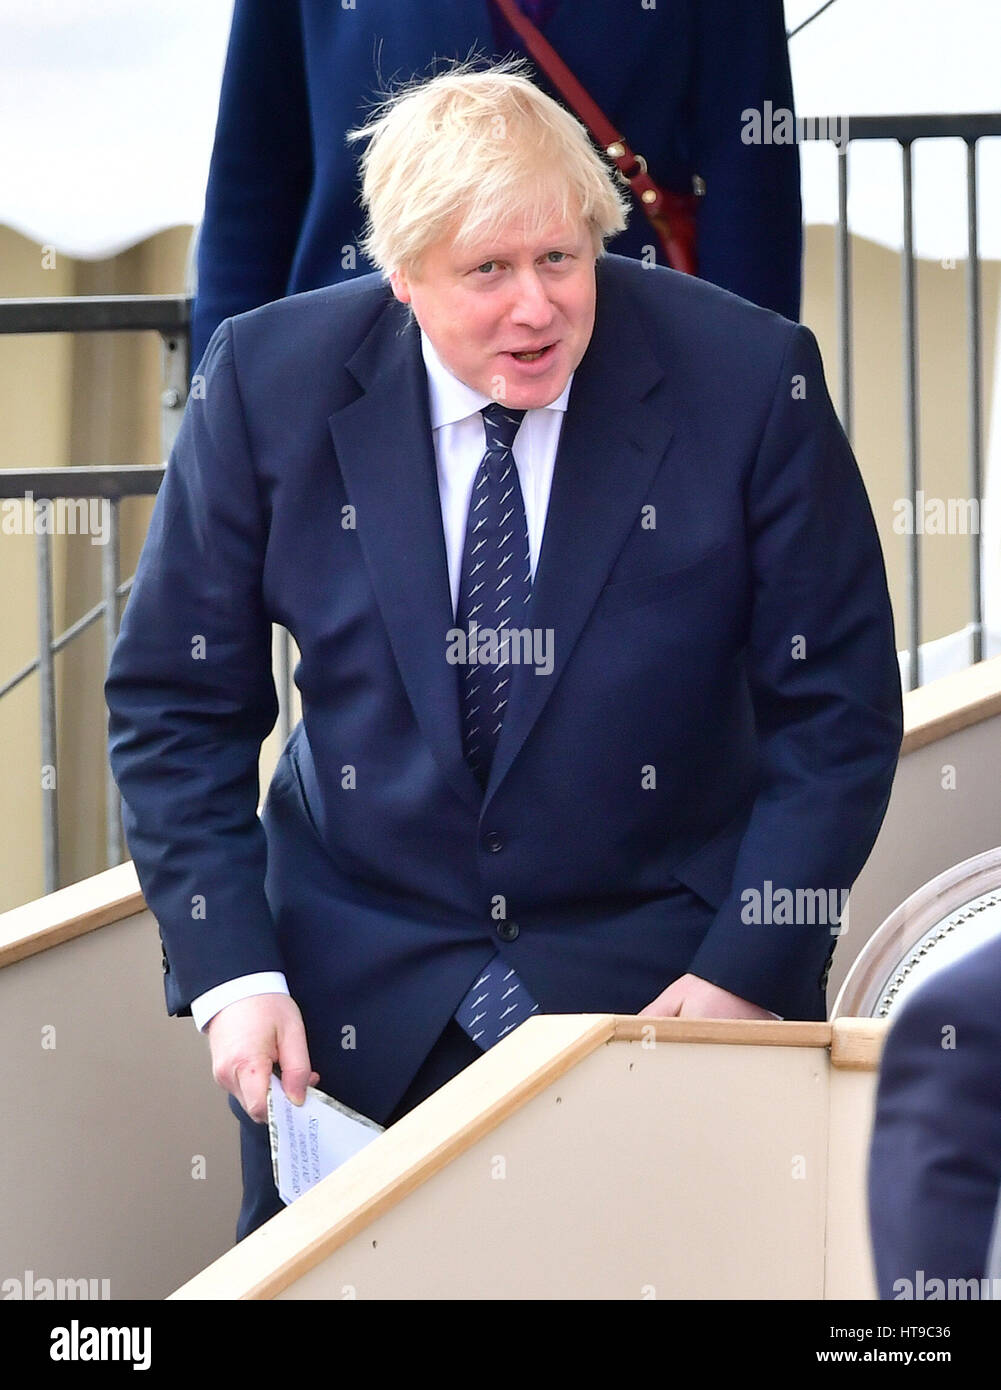 Secrétaire des affaires étrangères, Boris Johnson, assistant à un tambour militaire Service sur Horse Guards Parade à Londres, en avance sur le dévoilement d'un monument commémoratif en l'honneur des forces armées et les civils qui ont servi leur pays pendant la guerre du Golfe et des conflits en Irak et en Afghanistan. Banque D'Images